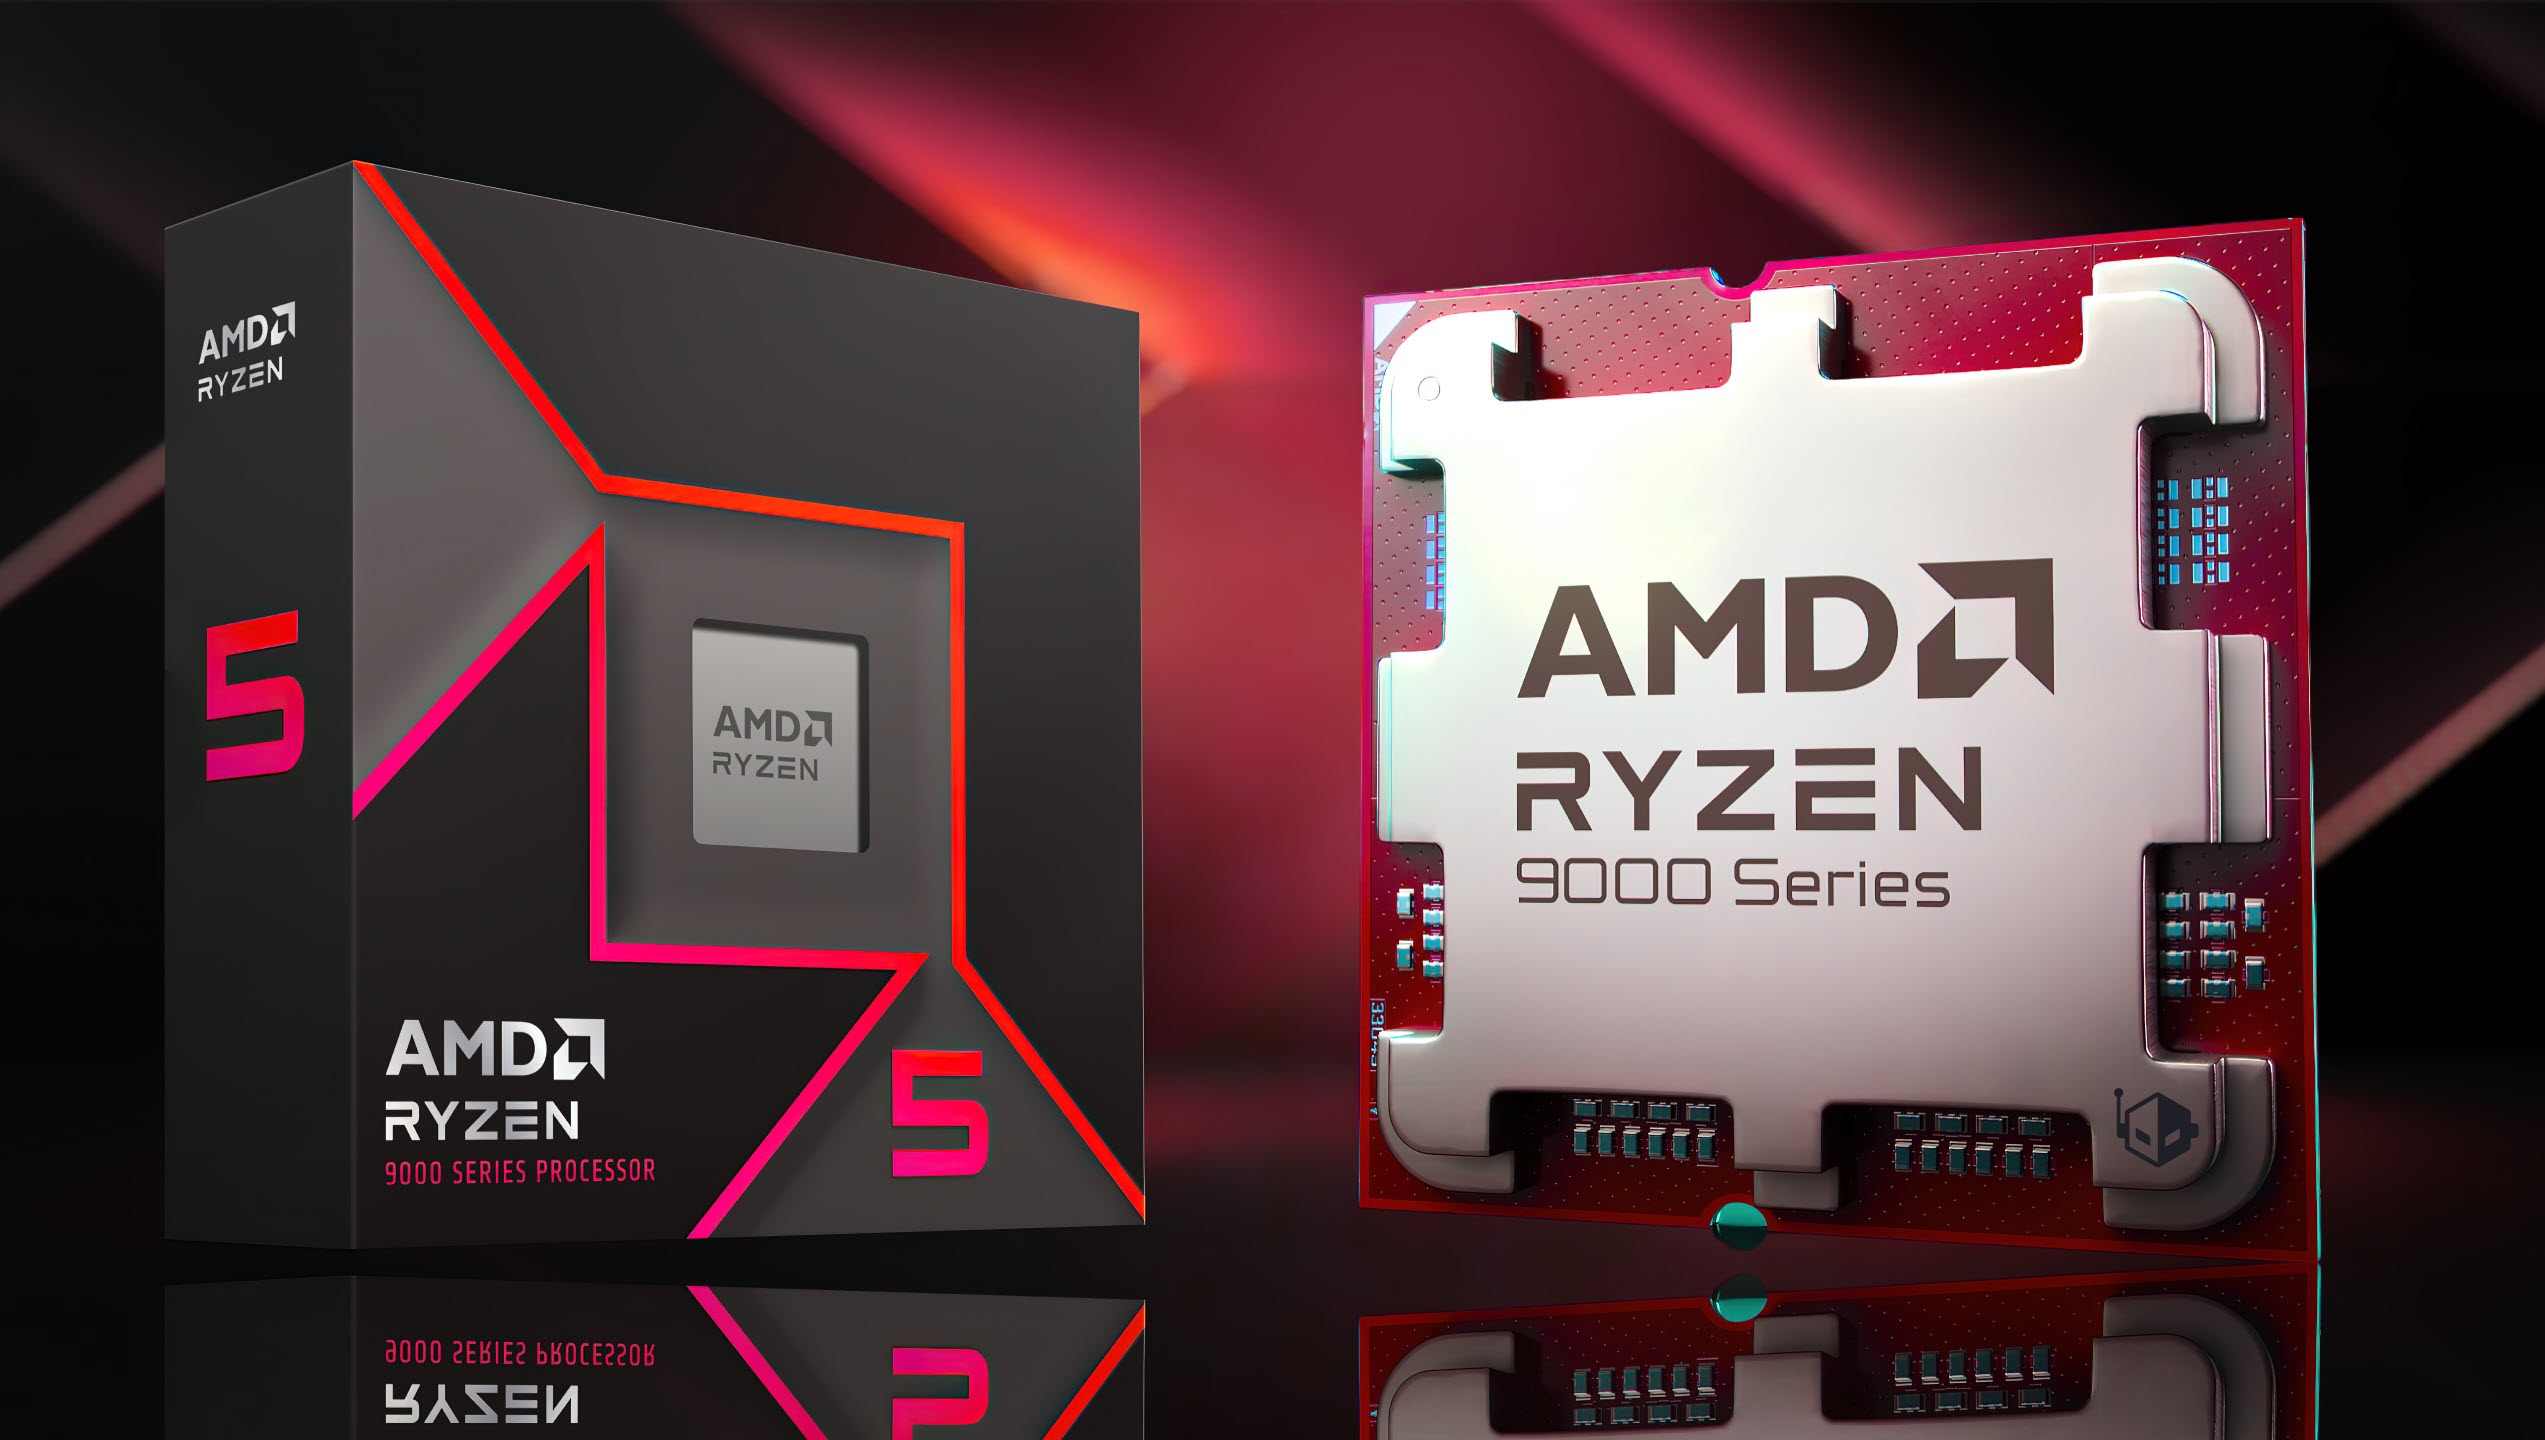 پردازنده AMD Ryzen 5 9600X توسط خرده فروش به قیمت 295 دلار آمریکا، Ryzen 9 9900X و Ryzen 9 5900XT در آمازون به فروش می رسد